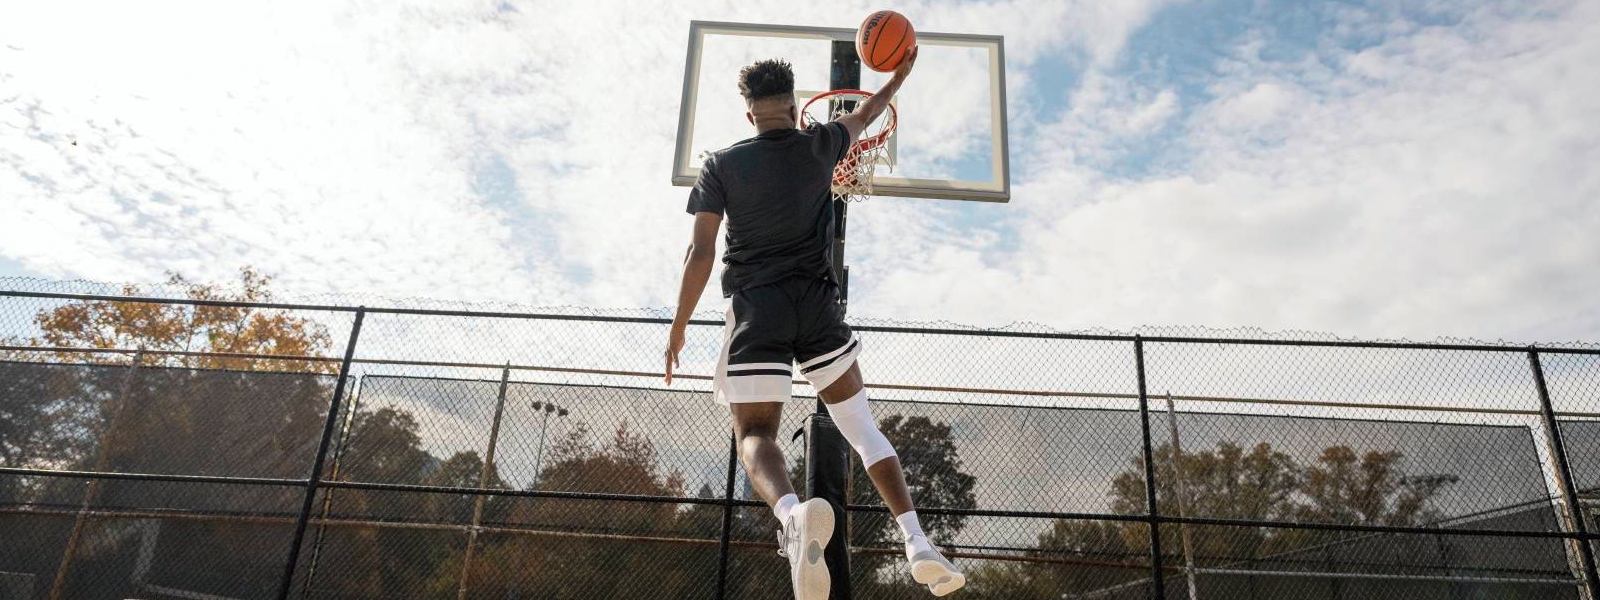 Il giocatore di basket salta su uno spazio libero al cestino e indossa una fascia bianca del ginocchio